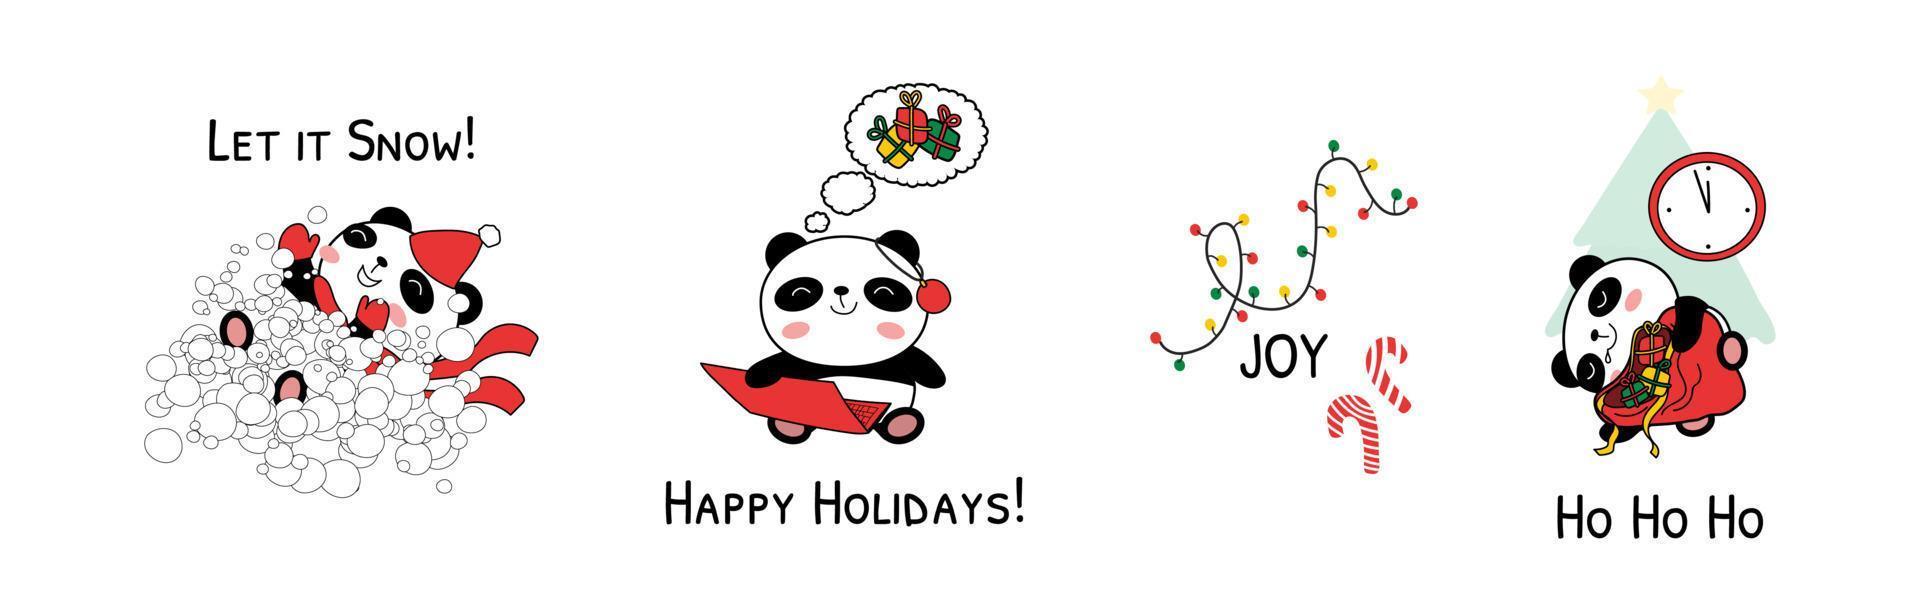 Weihnachtsbabypandas-Vektorillustration lokalisiert auf weißem Hintergrund vektor